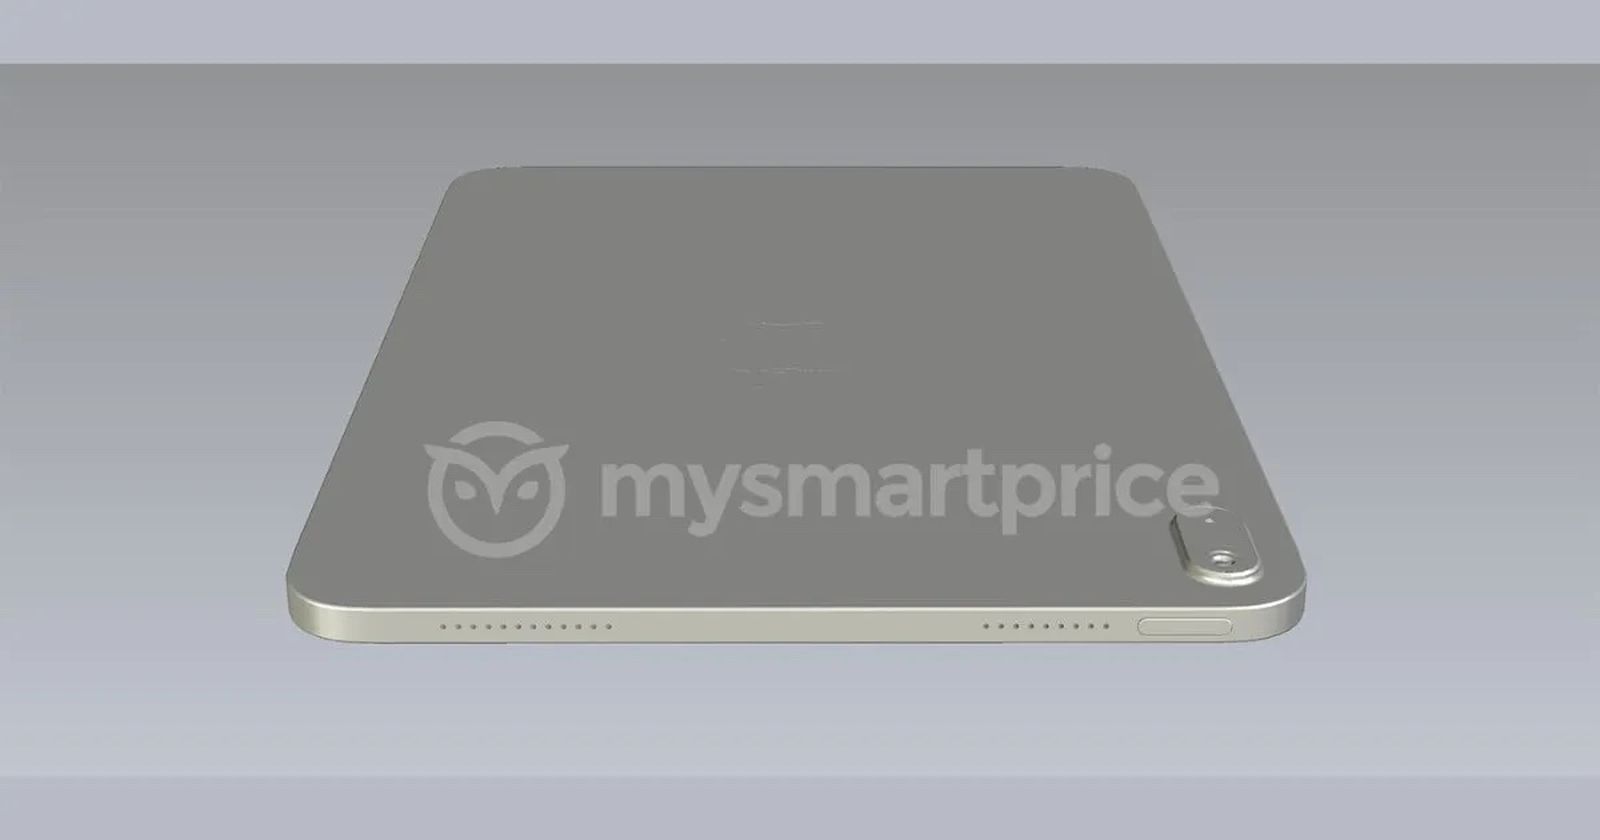 Hình ảnh render được cho là của iPad thế hệ 10: thiết kế phẳng nhưng vẫn có nút Home Touch ID